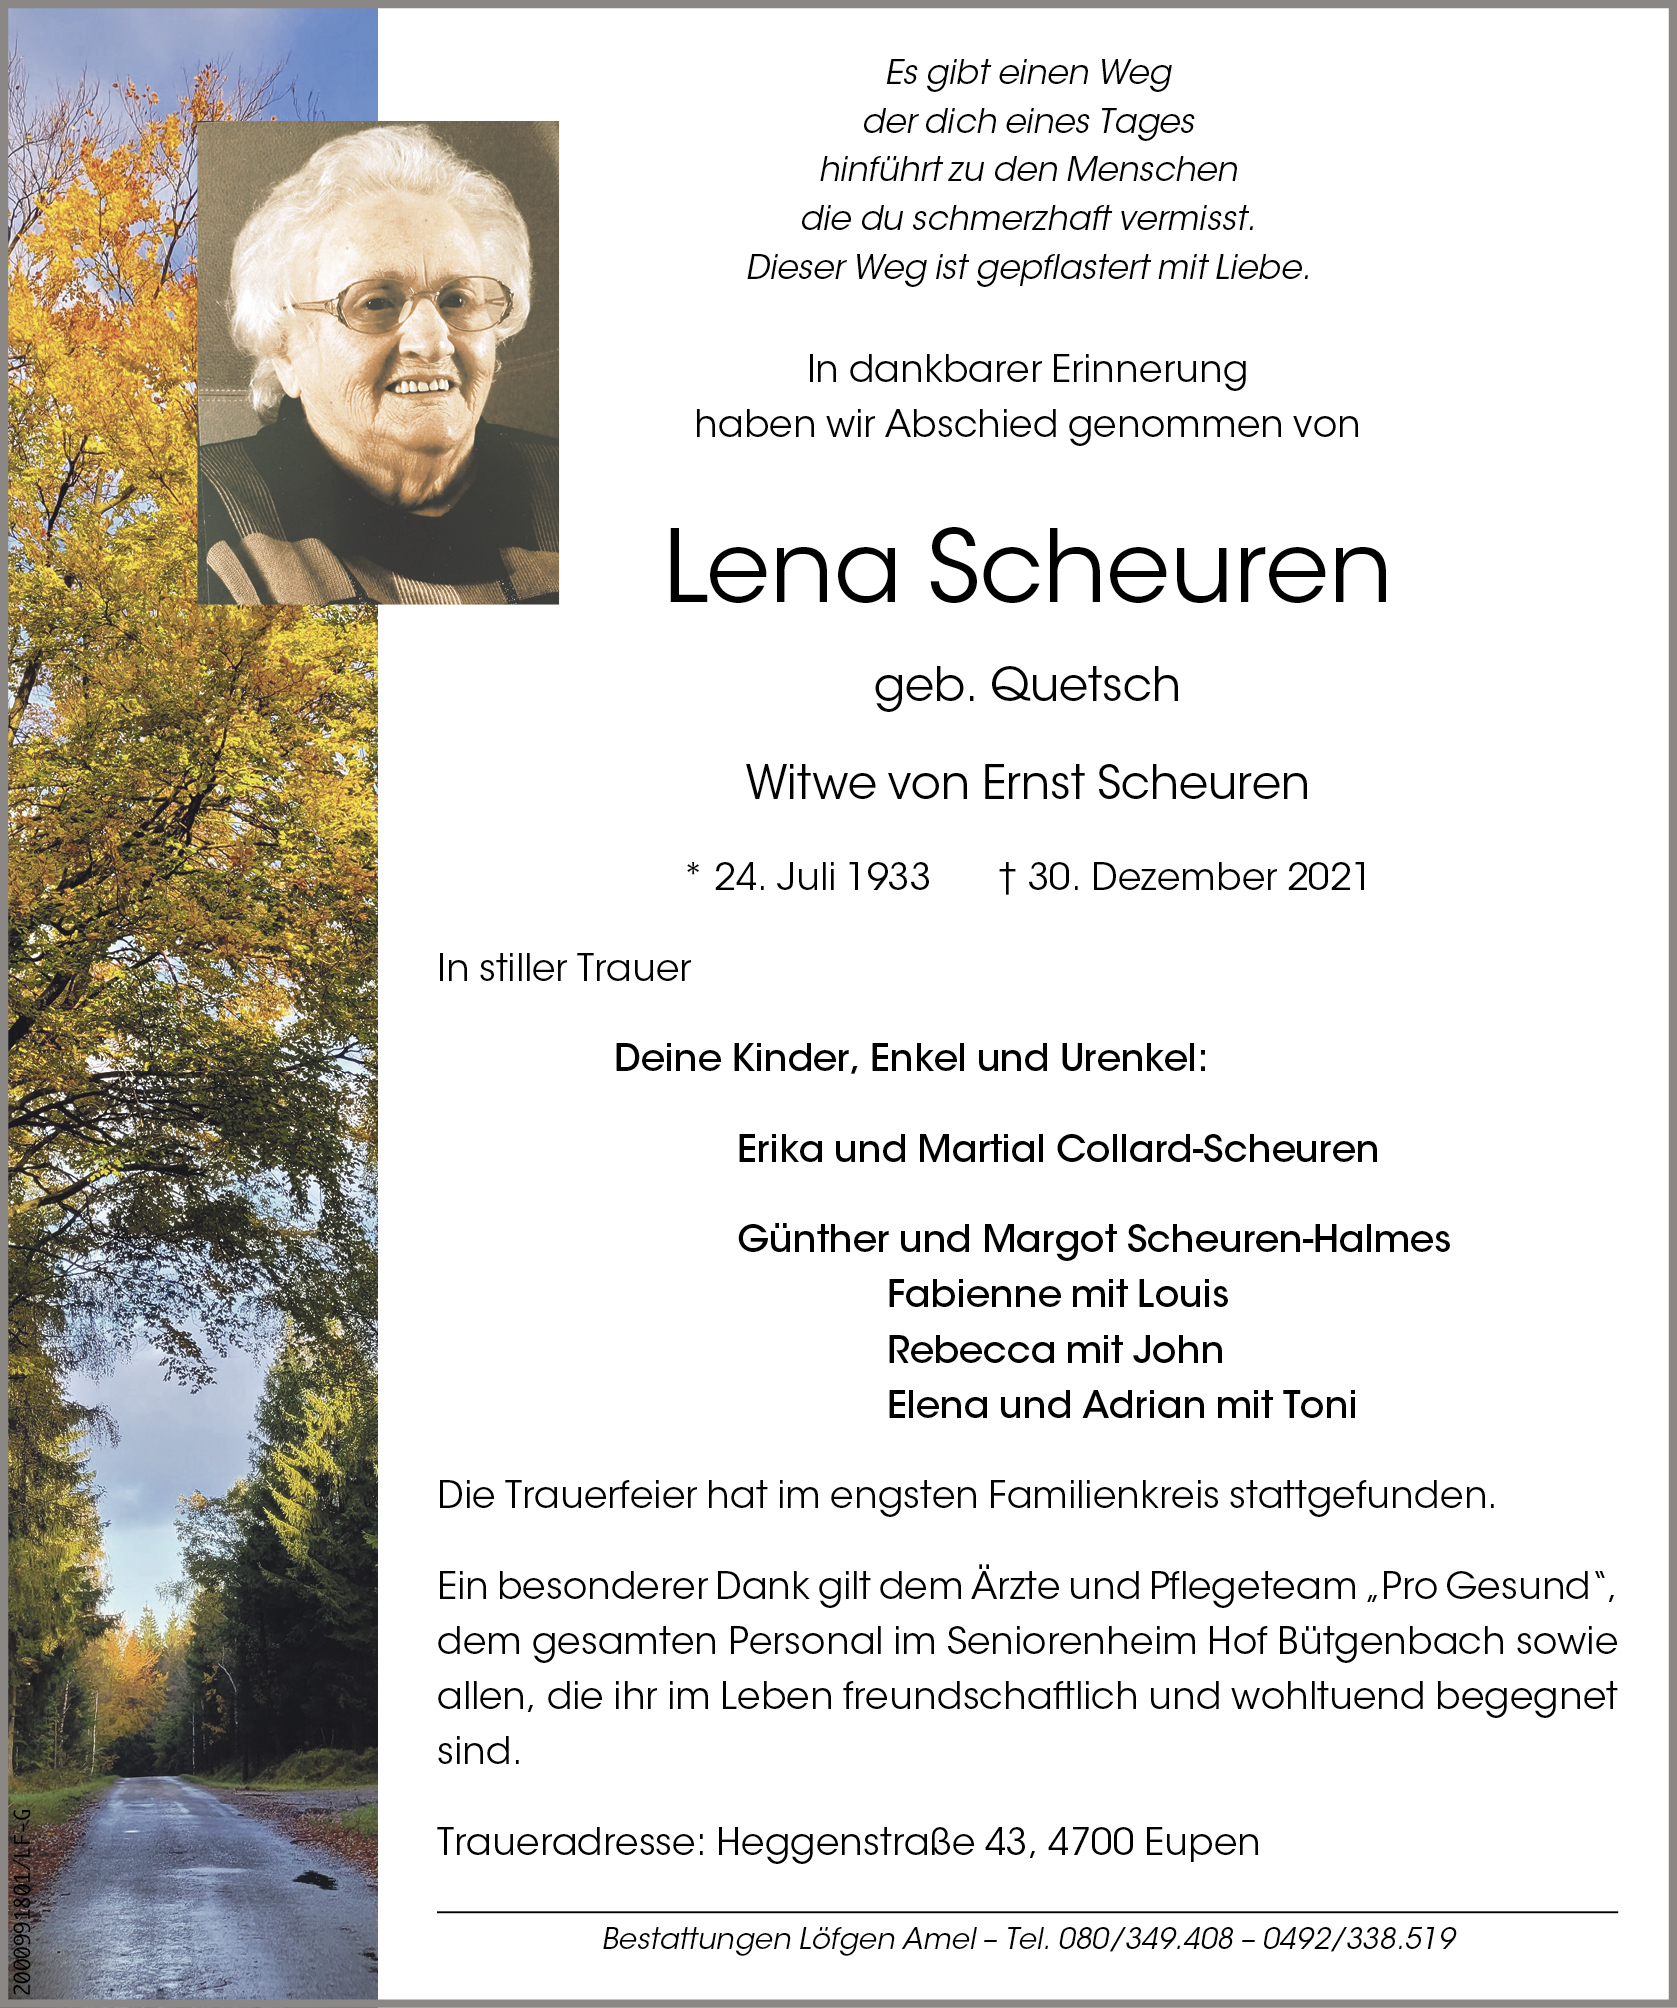 Lena Scheuren-Quetsch